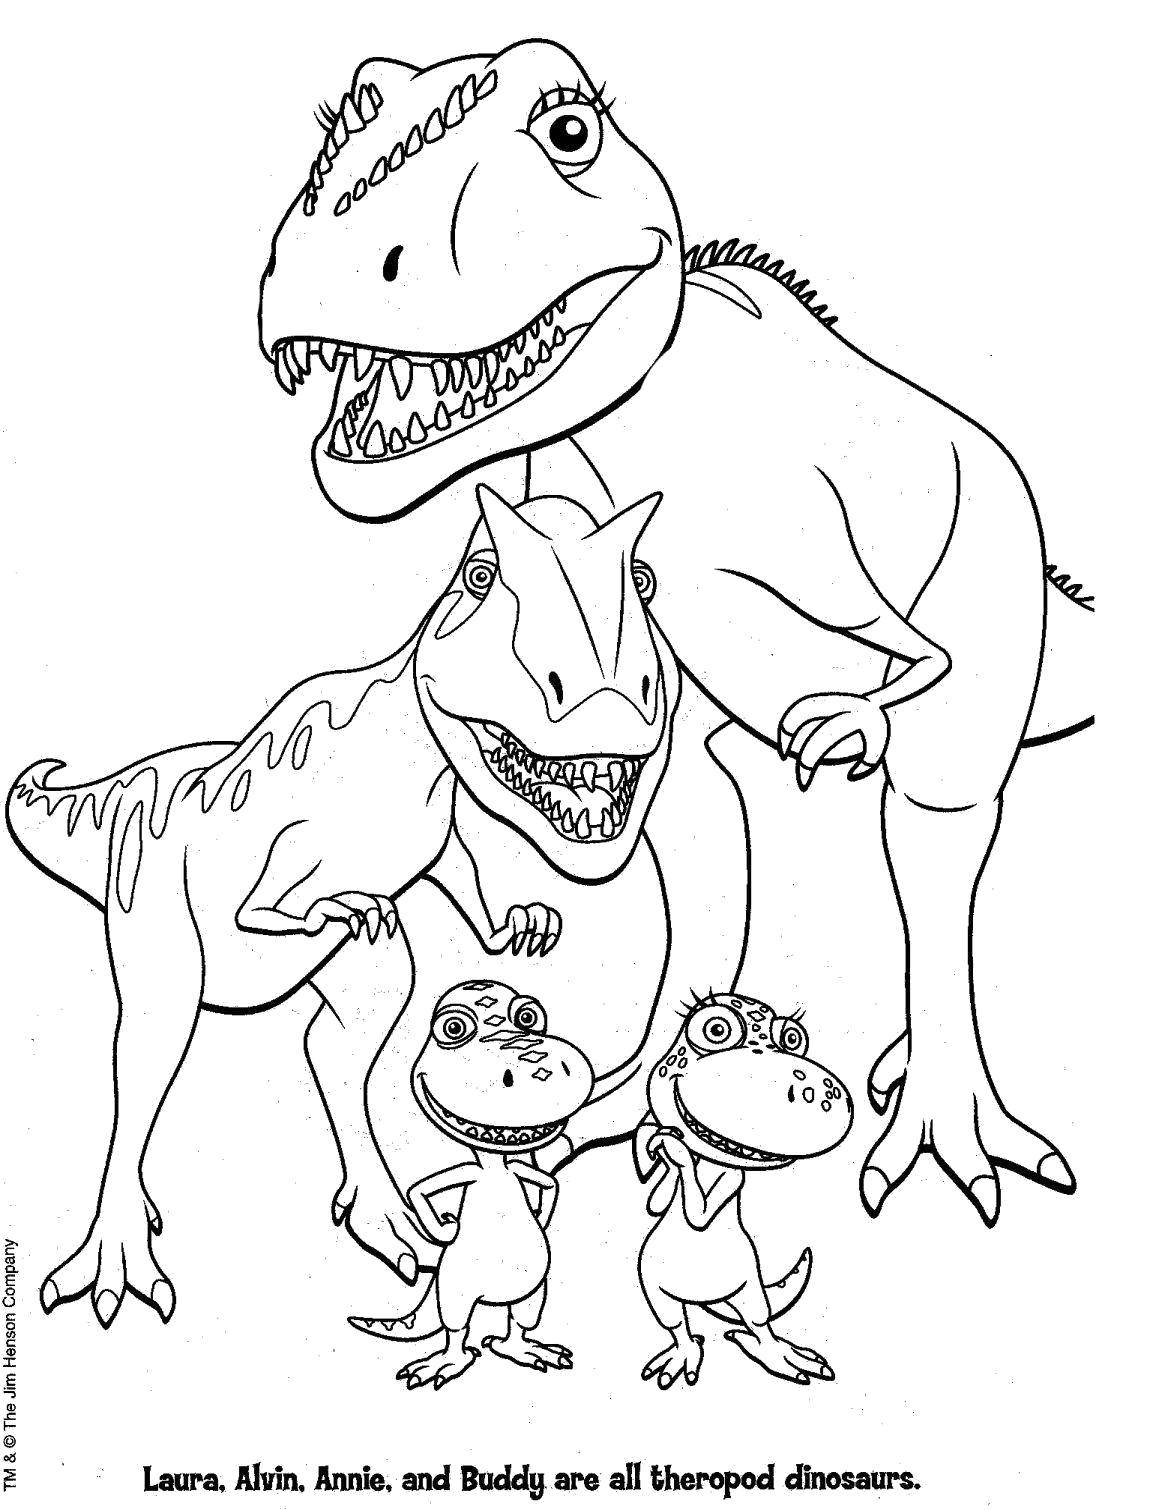 Название: Раскраска Лора, алвин, энни и бади. Категория: динозавр. Теги: Динозавры.